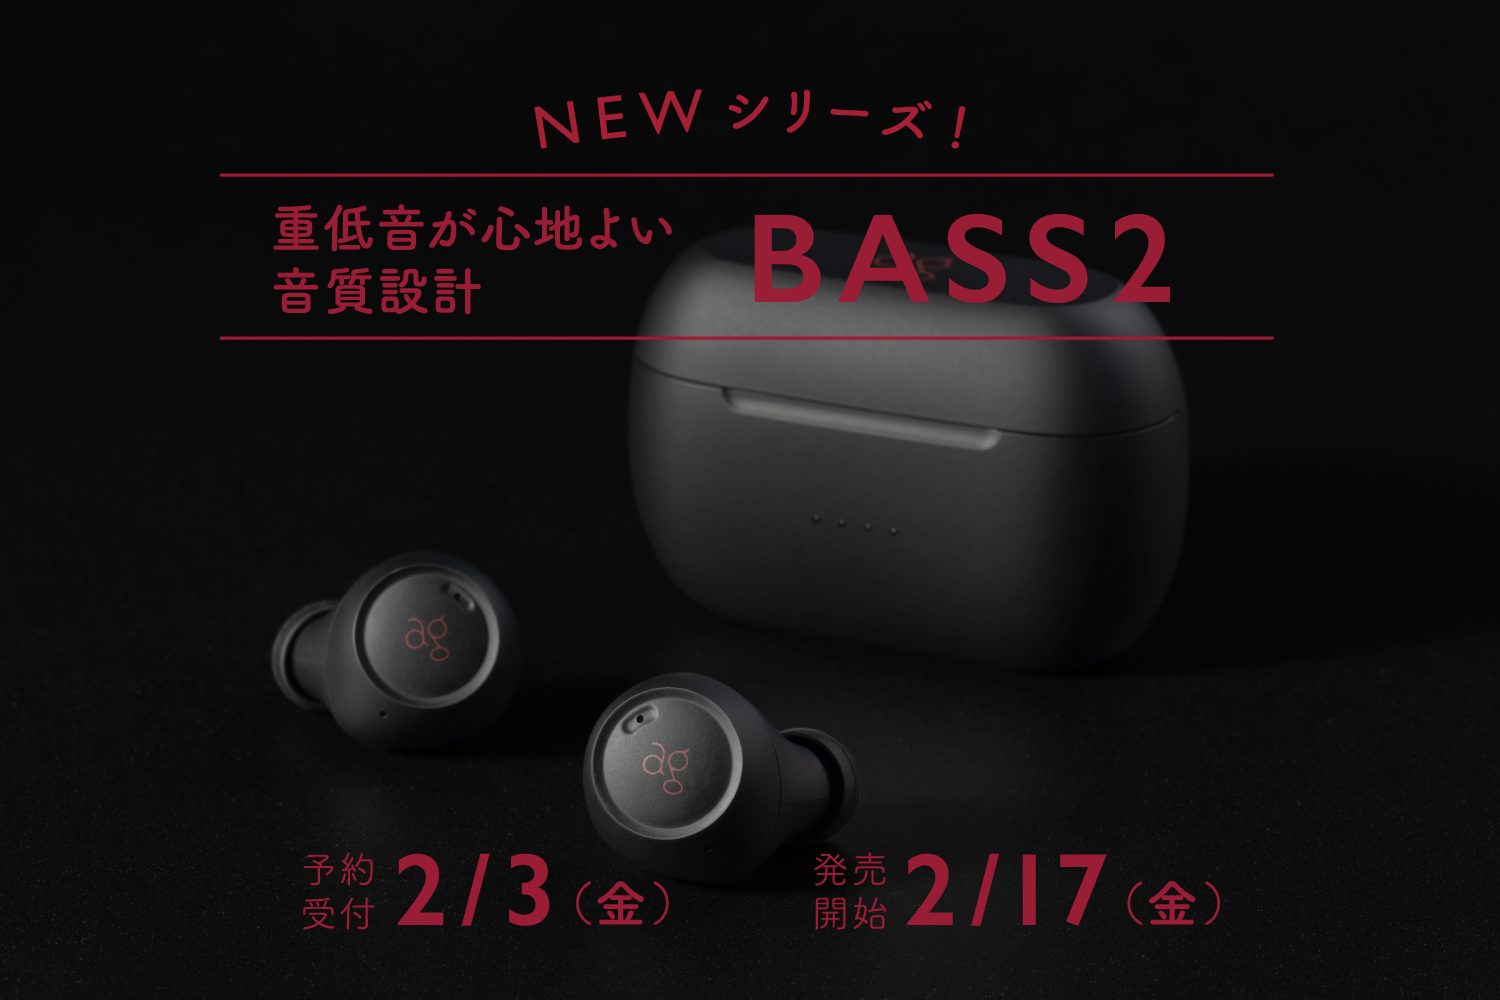 オーディオブランドagより
重低音が心地よく感じられるような
音質設計を施した新シリーズ「BASSシリーズ」から
完全ワイヤレスイヤホン「BASS2」発売